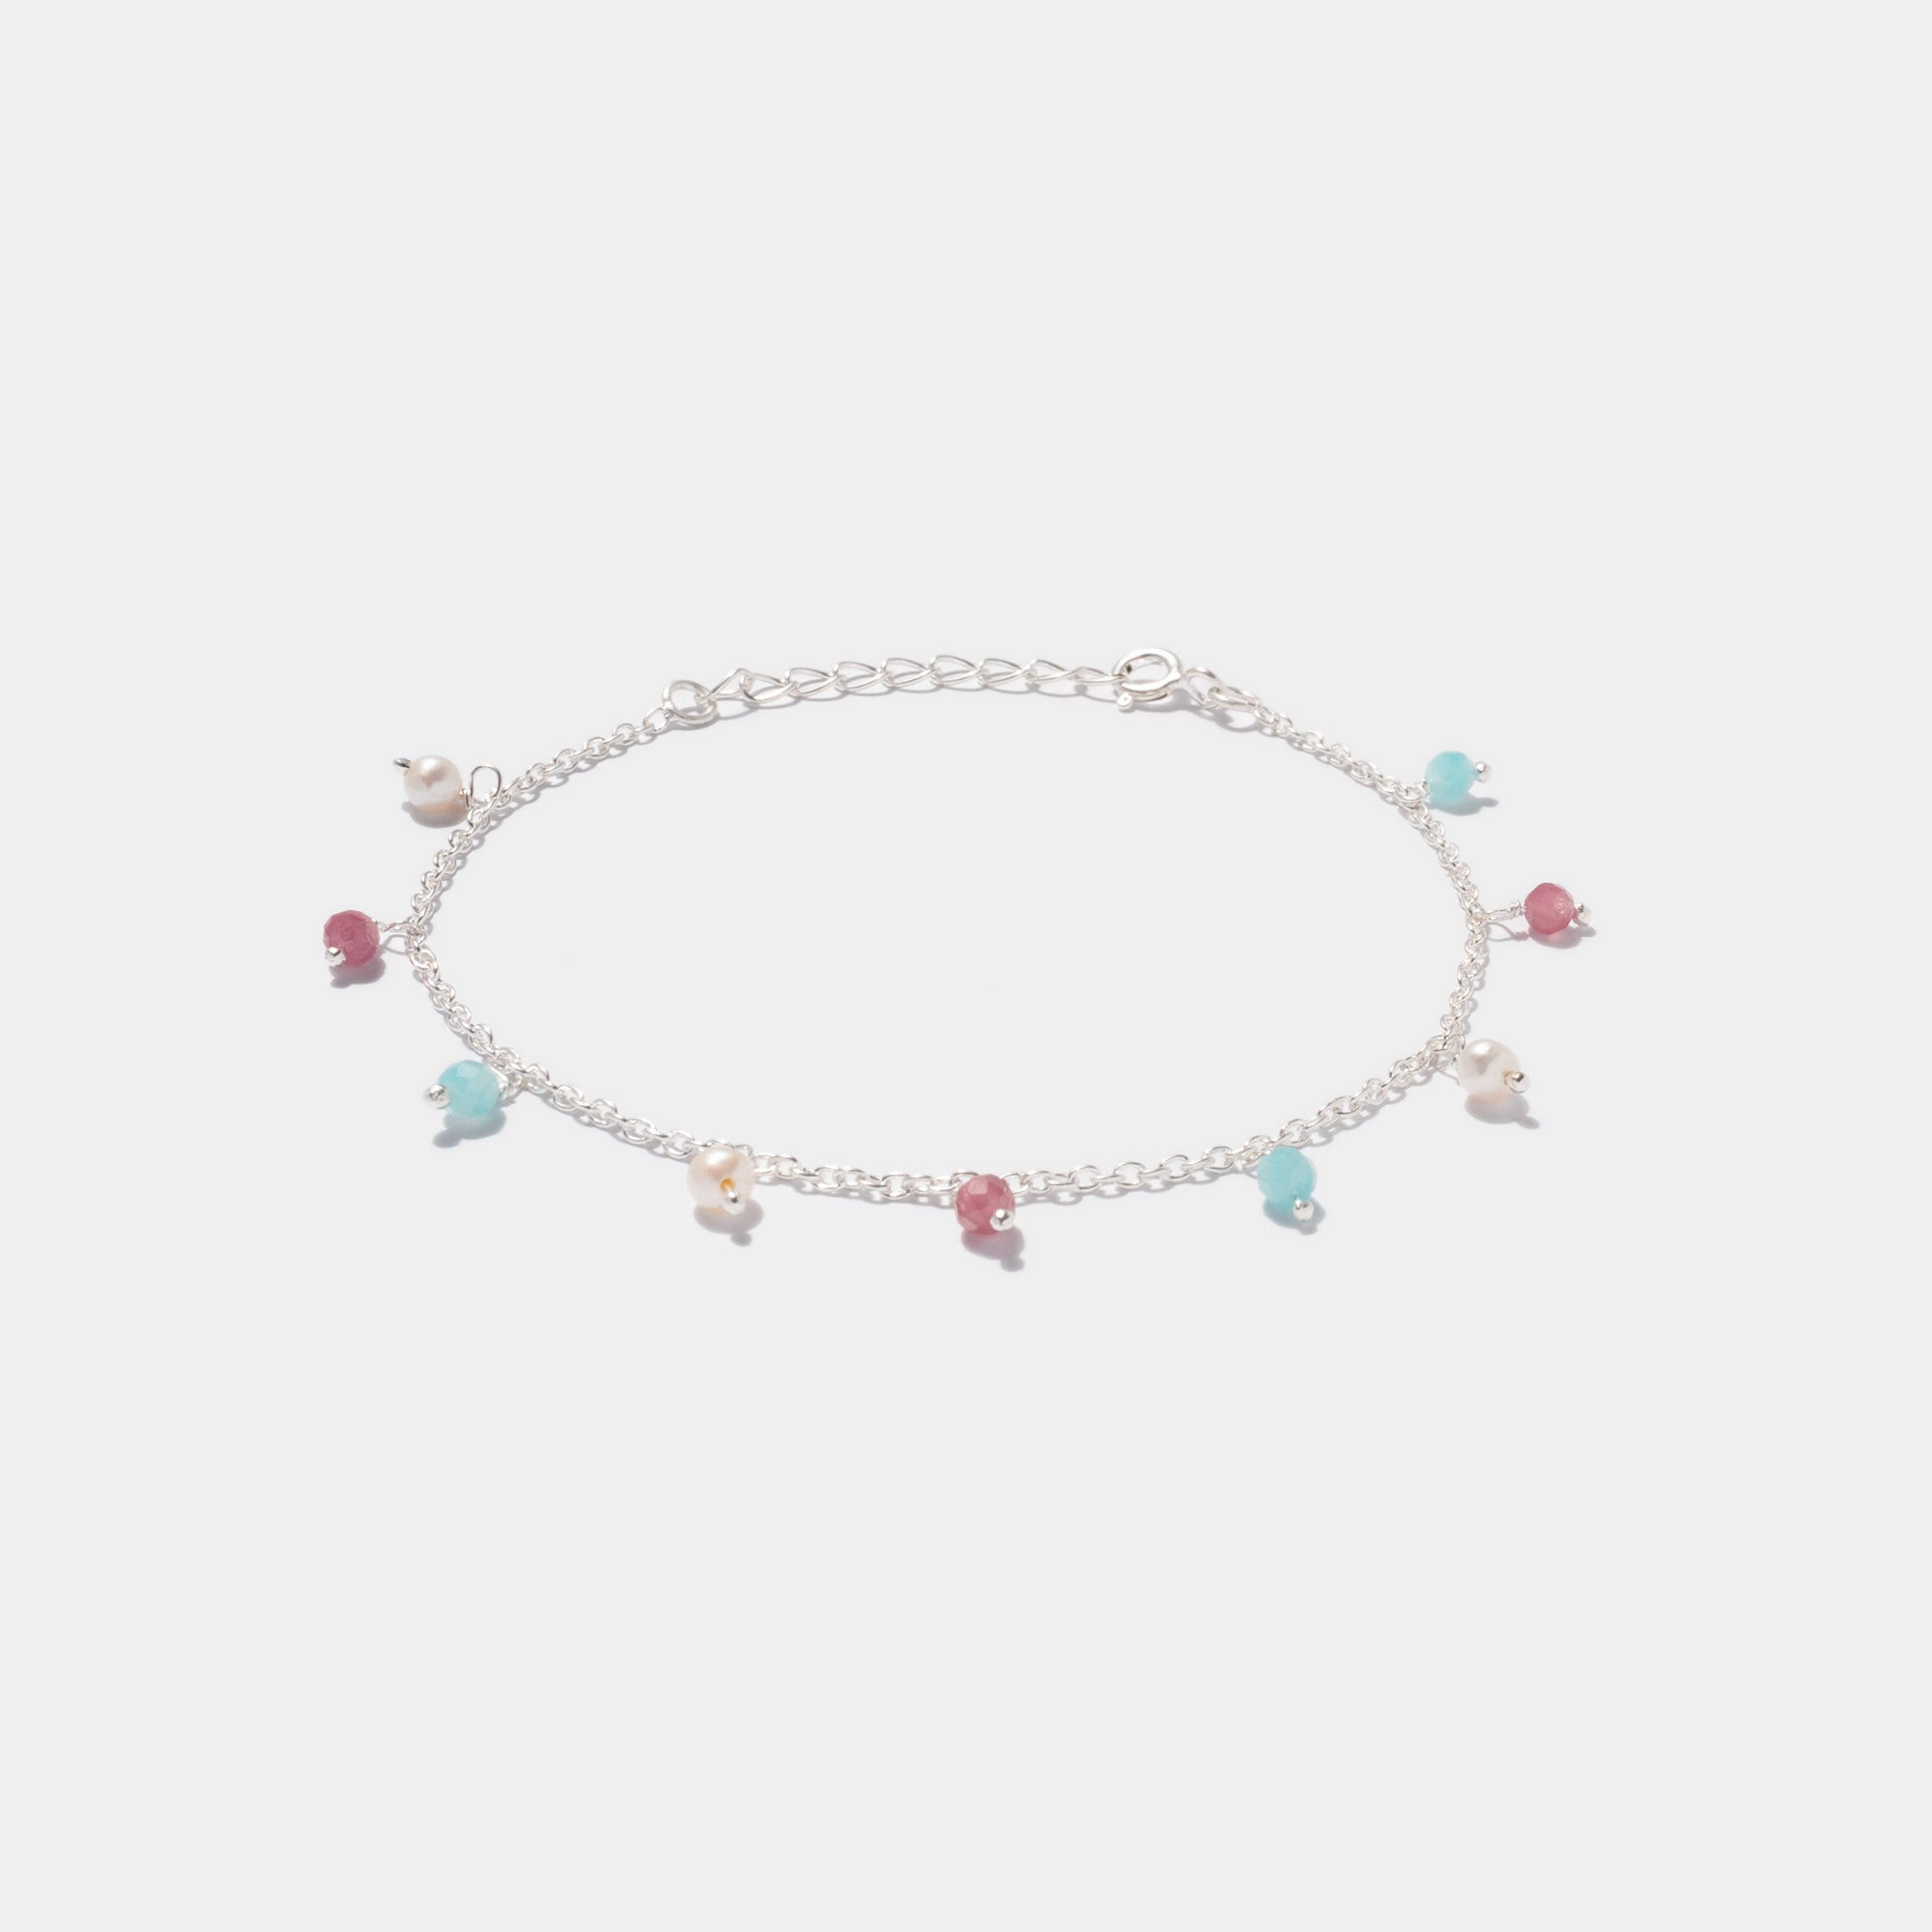 Armband Nice Rouge Silber - Fleurs des Prés Jewelry